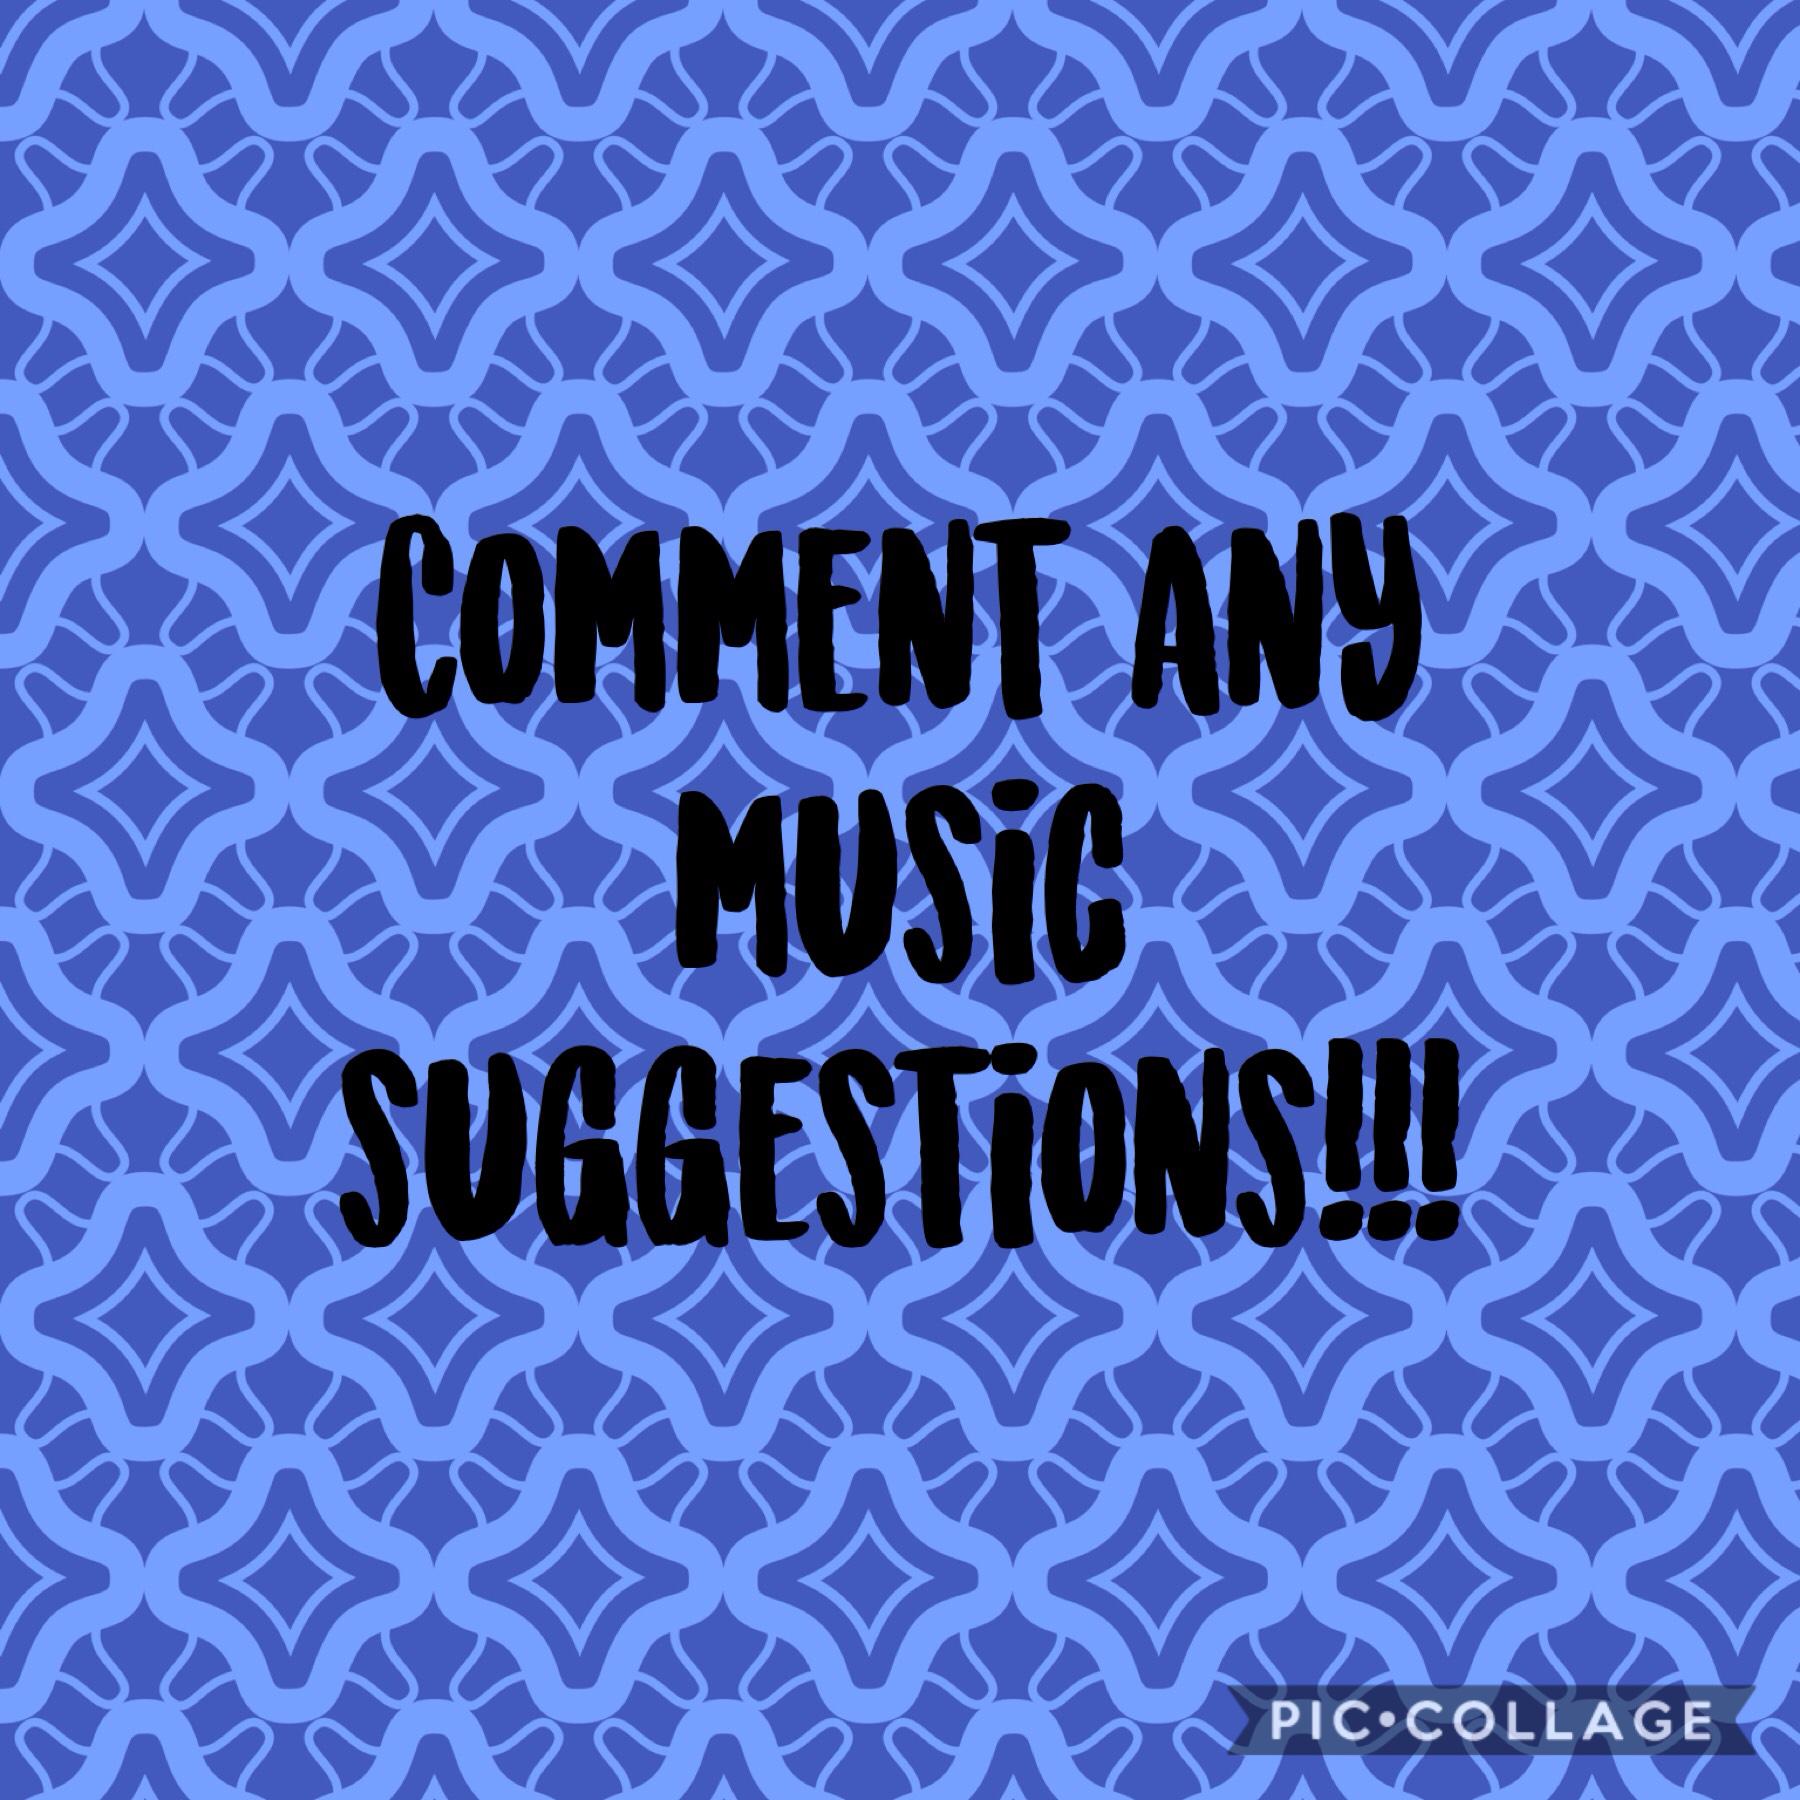 Plz comment music suggestions! 6/29/19